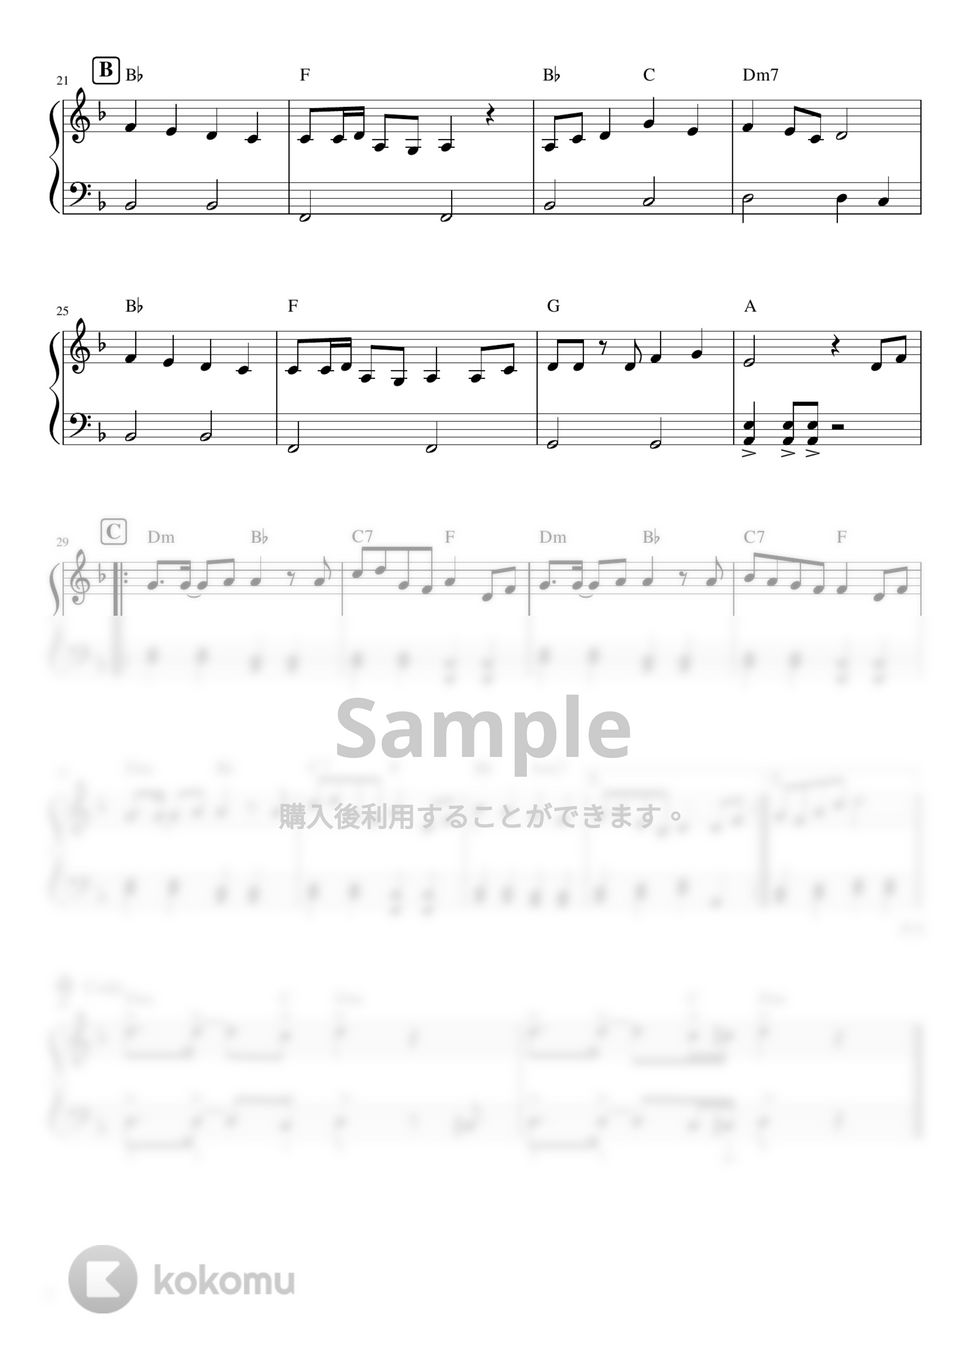 黒うさP - 千本桜 (ピアノソロ / 初級) by orinpia music